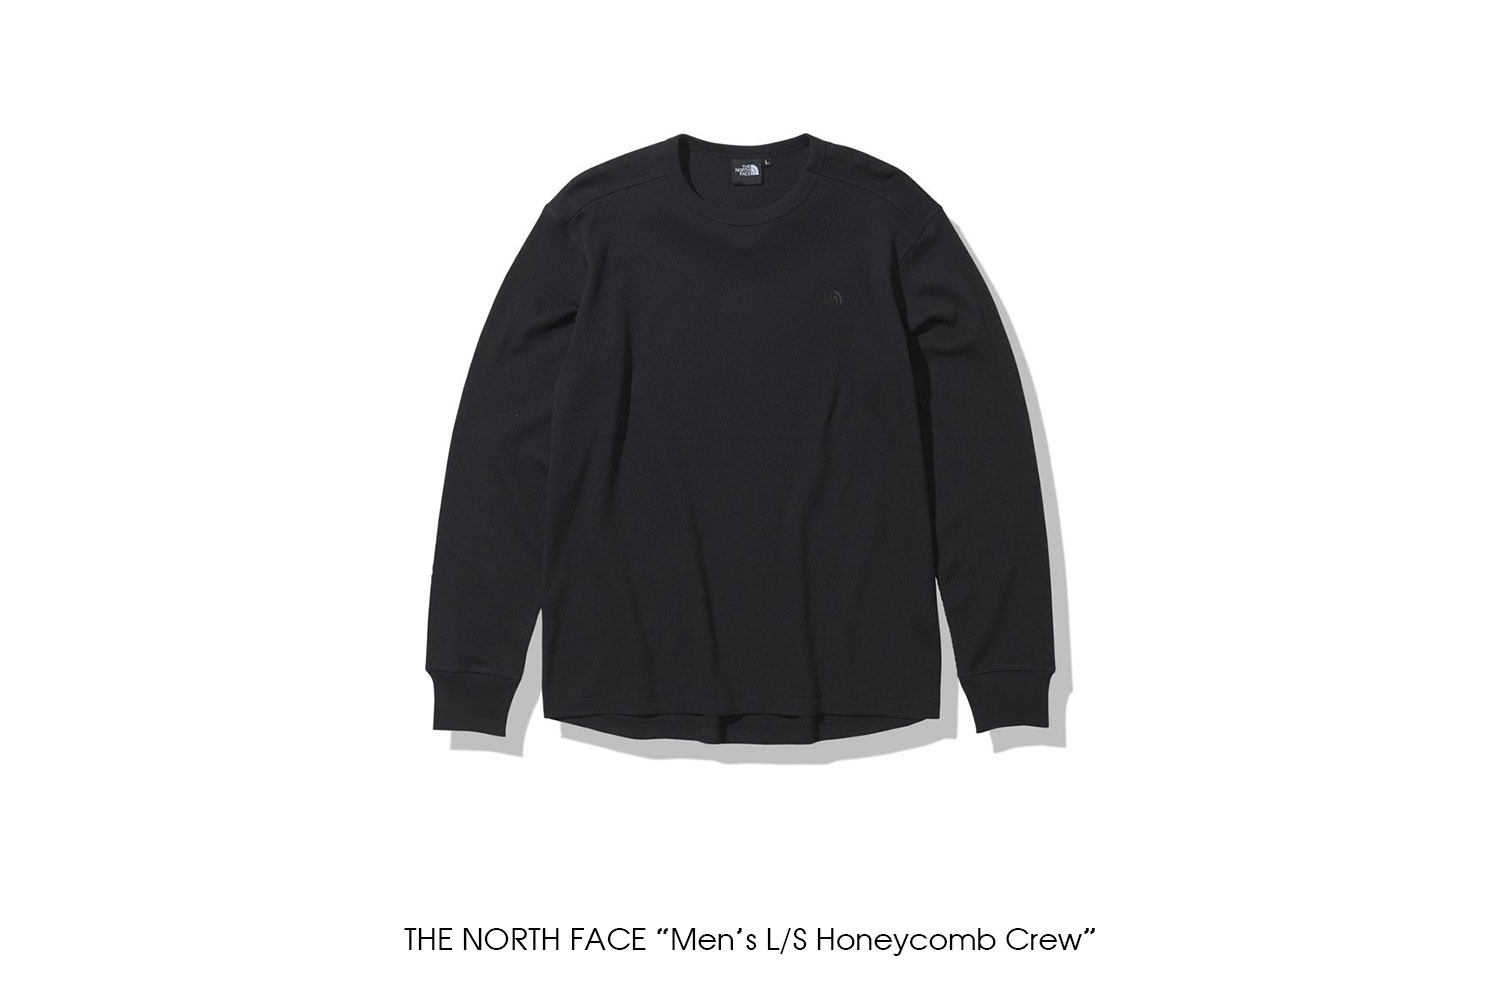 THE NORTH FACE "Men's L/S Honeycomb Crew"